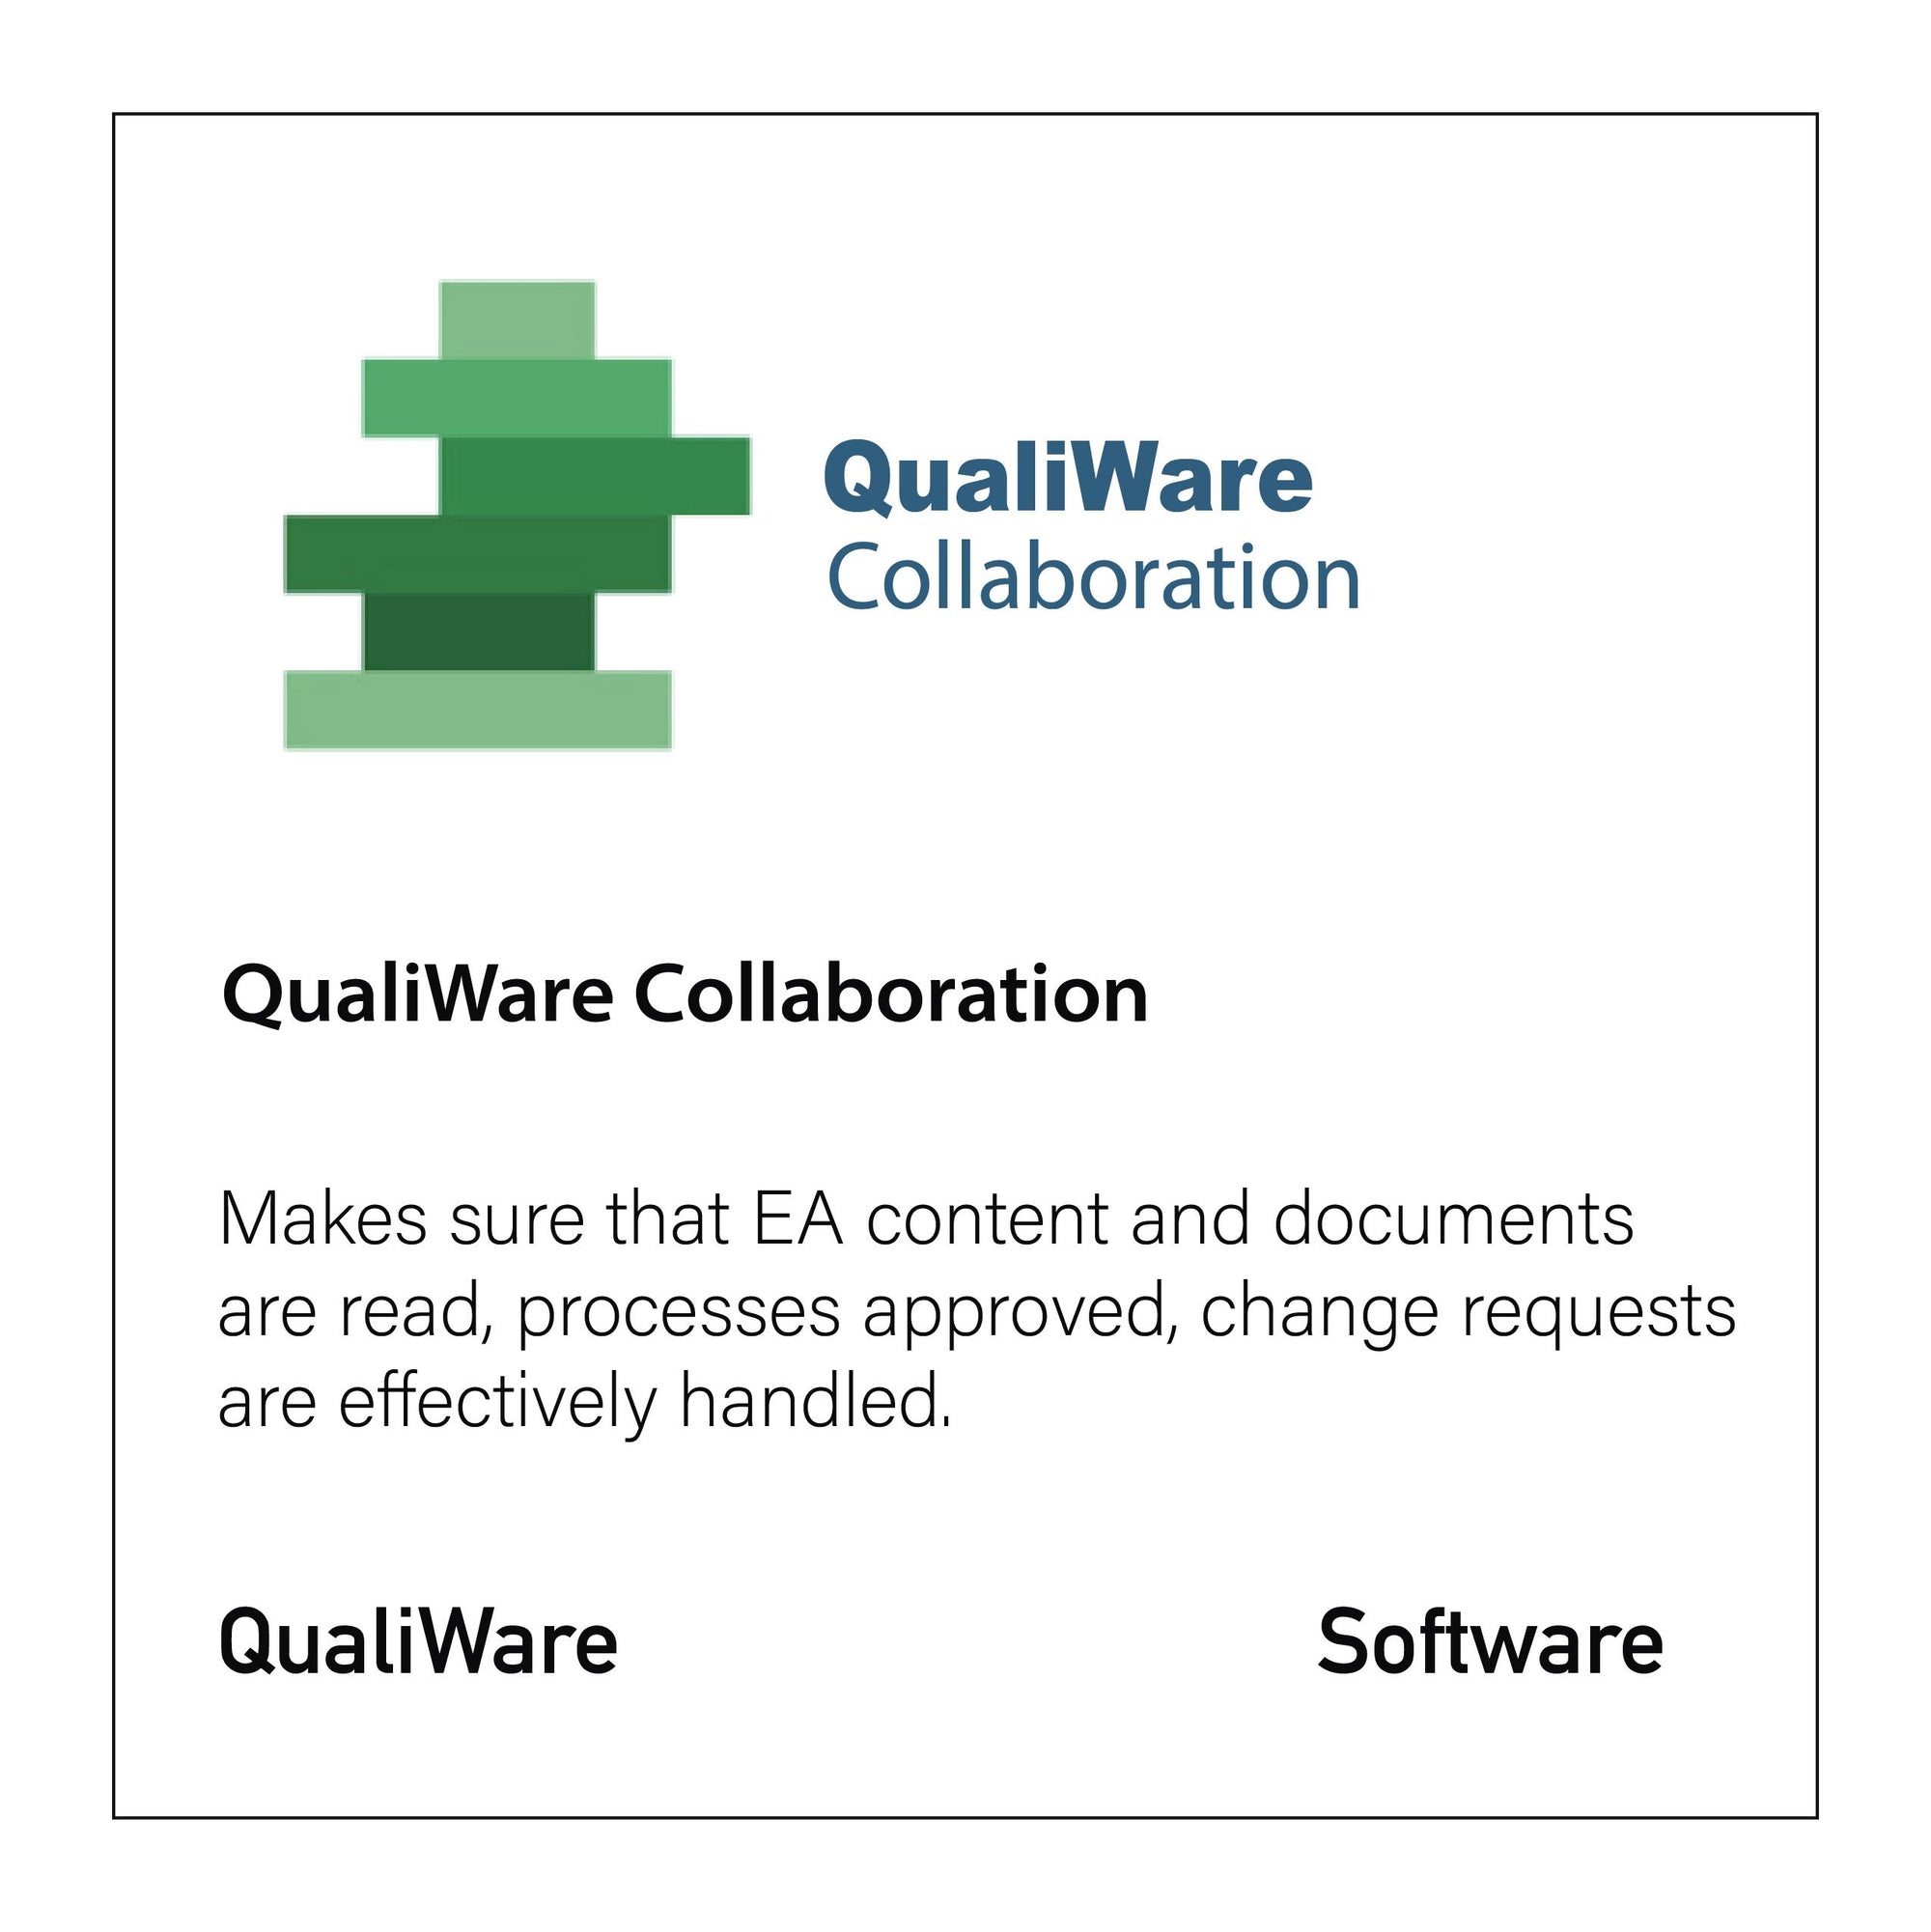 QualiWare Collaboration - CloseReach Ltd